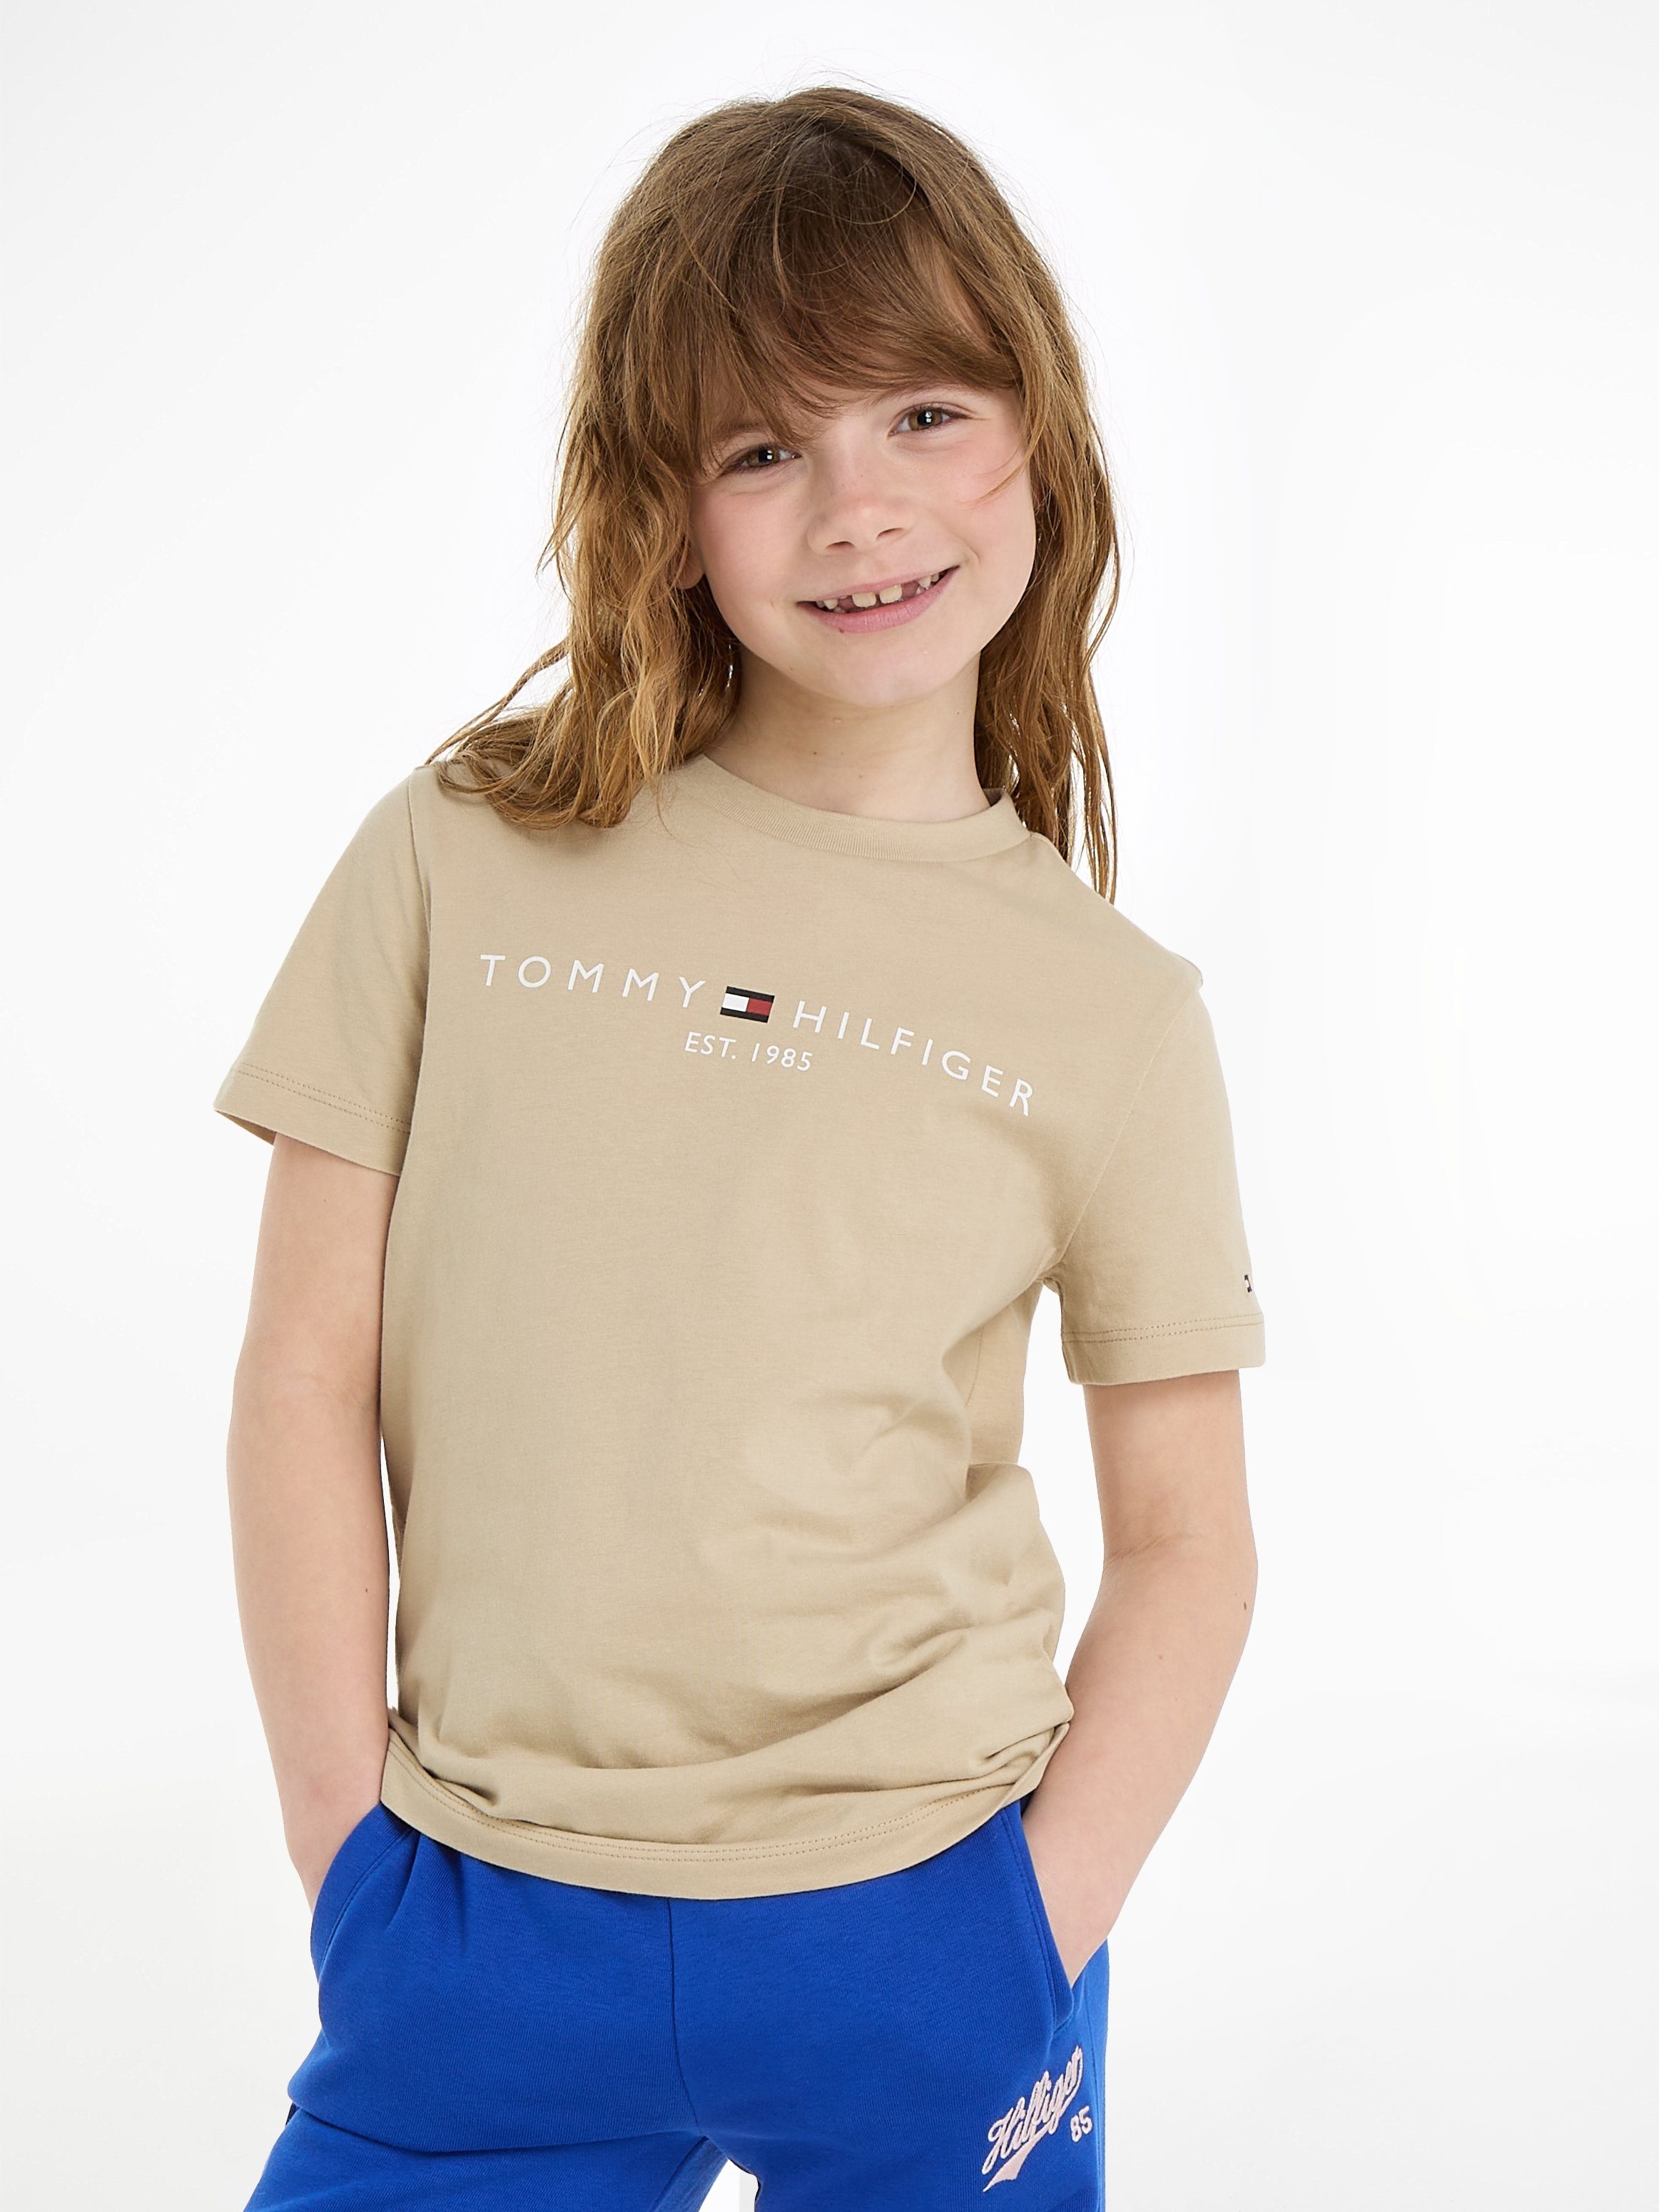 ESSENTIAL Kinder S/S beige U Jahre bis Tommy Hilfiger 16 TEE T-Shirt